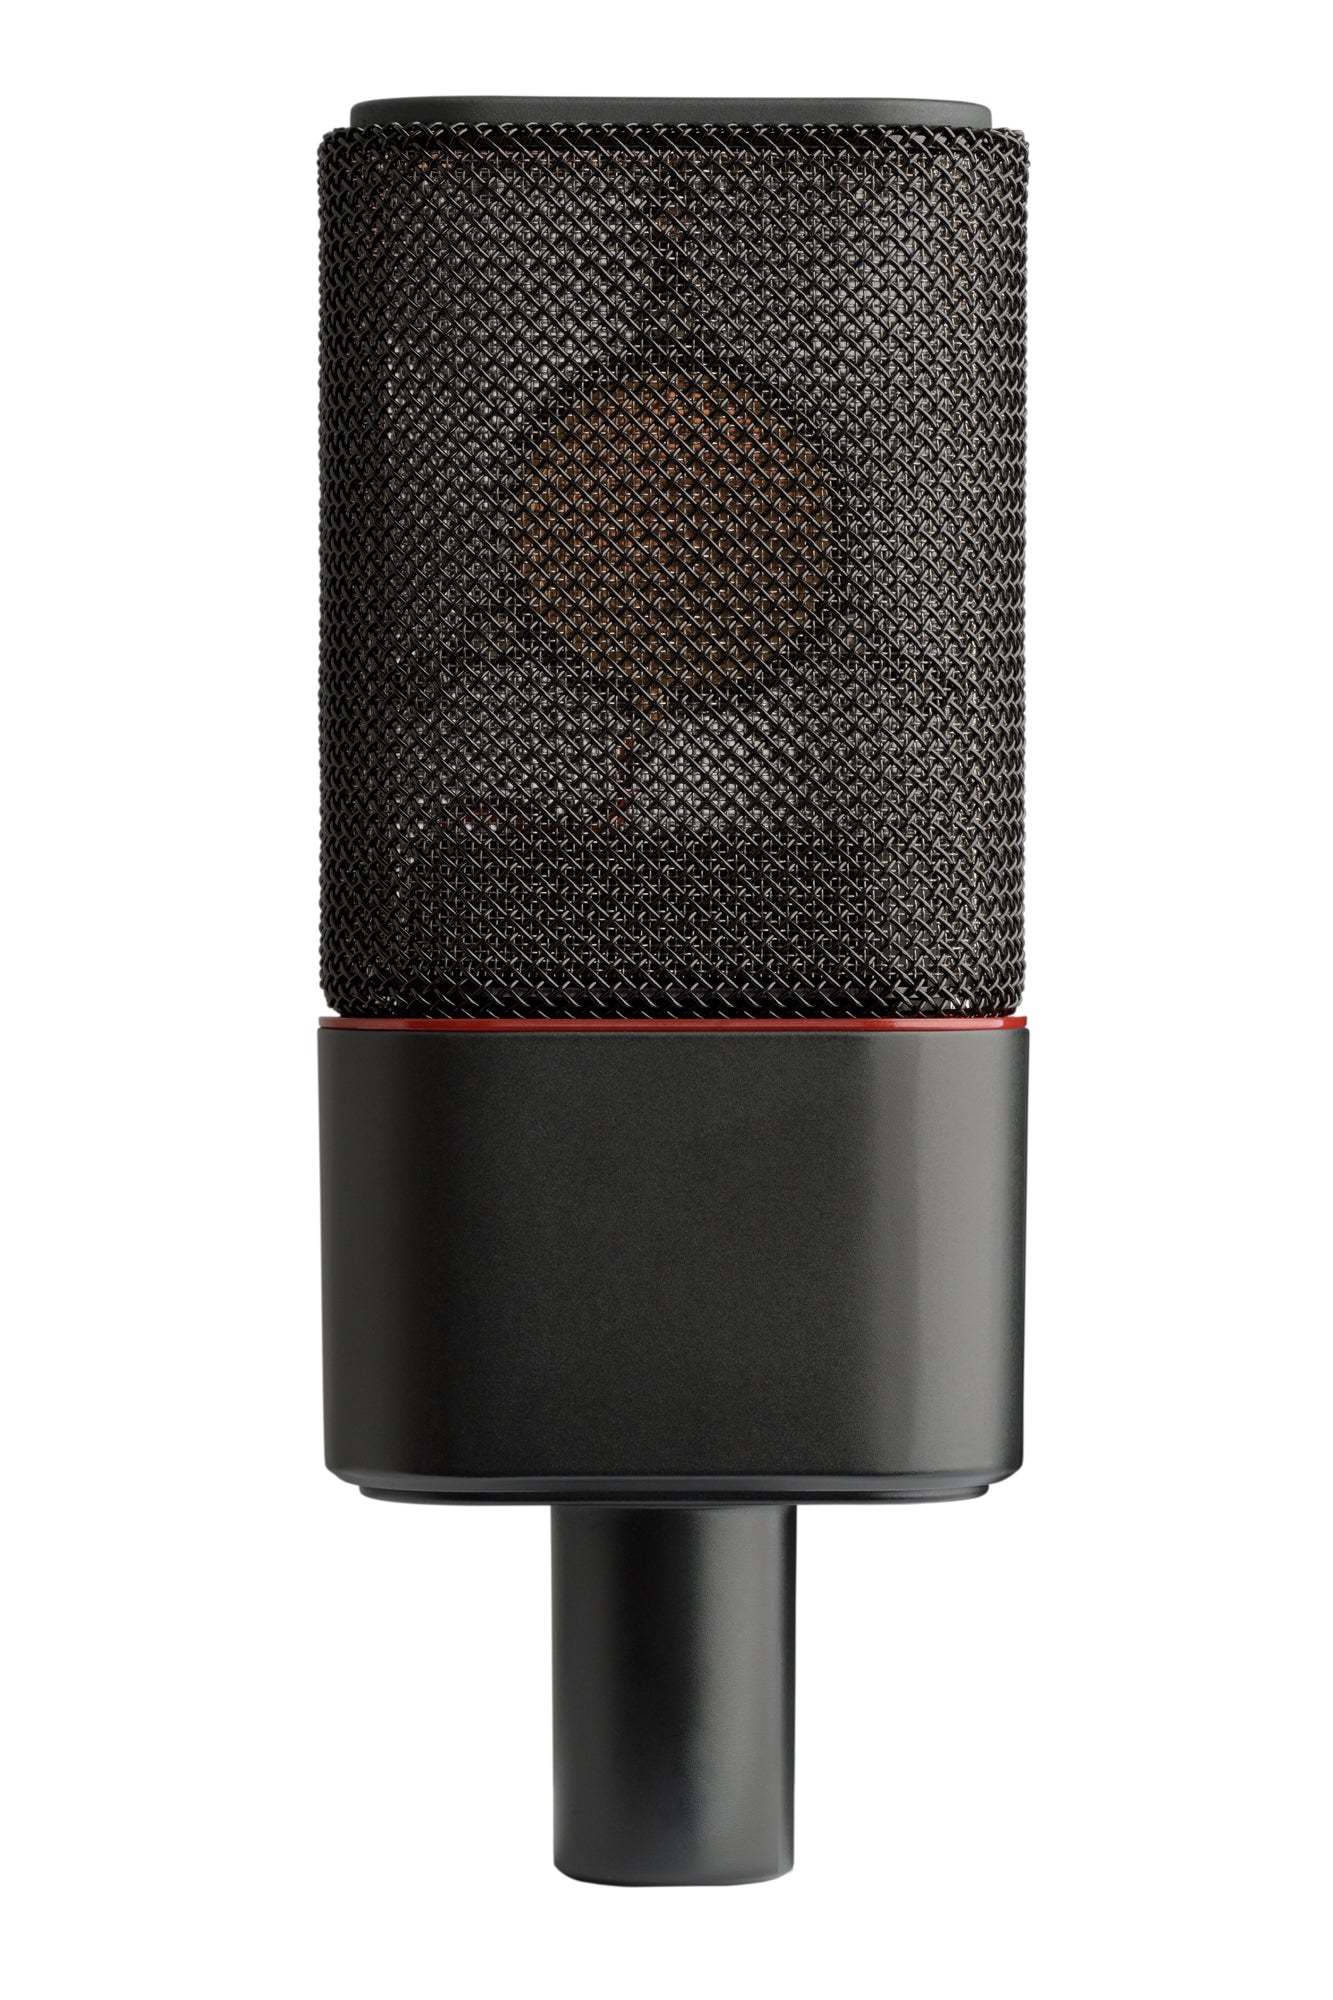 Austrian Audio Oc18studio Large-Diaphragm Condenser Microphone